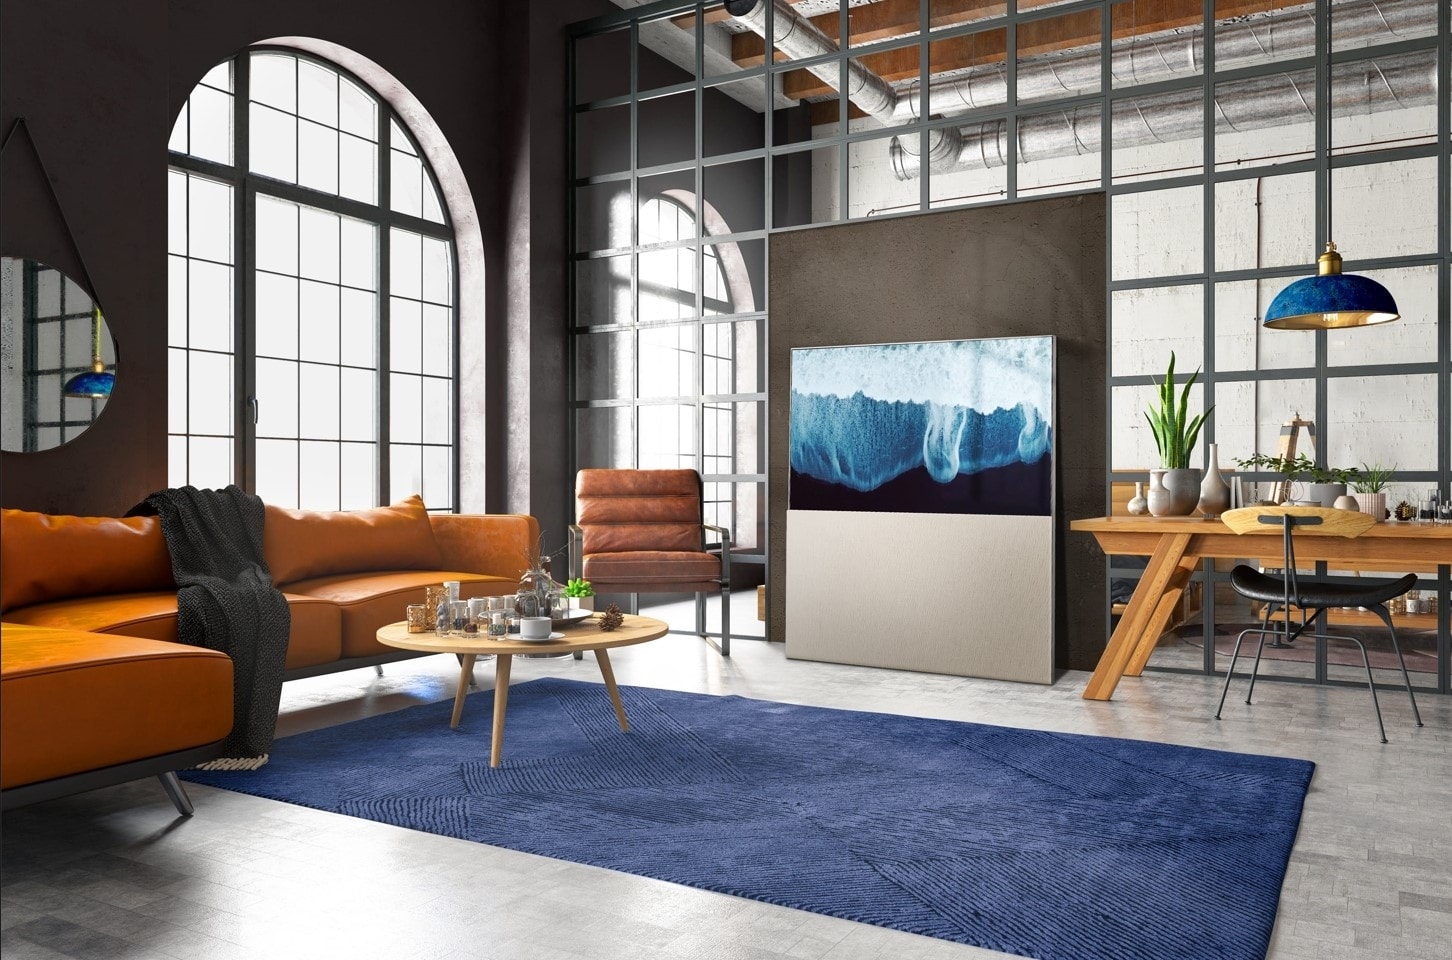 LG OLED Easel ist ein Fernseher, der aussieht wie Kunst in einer Galerie